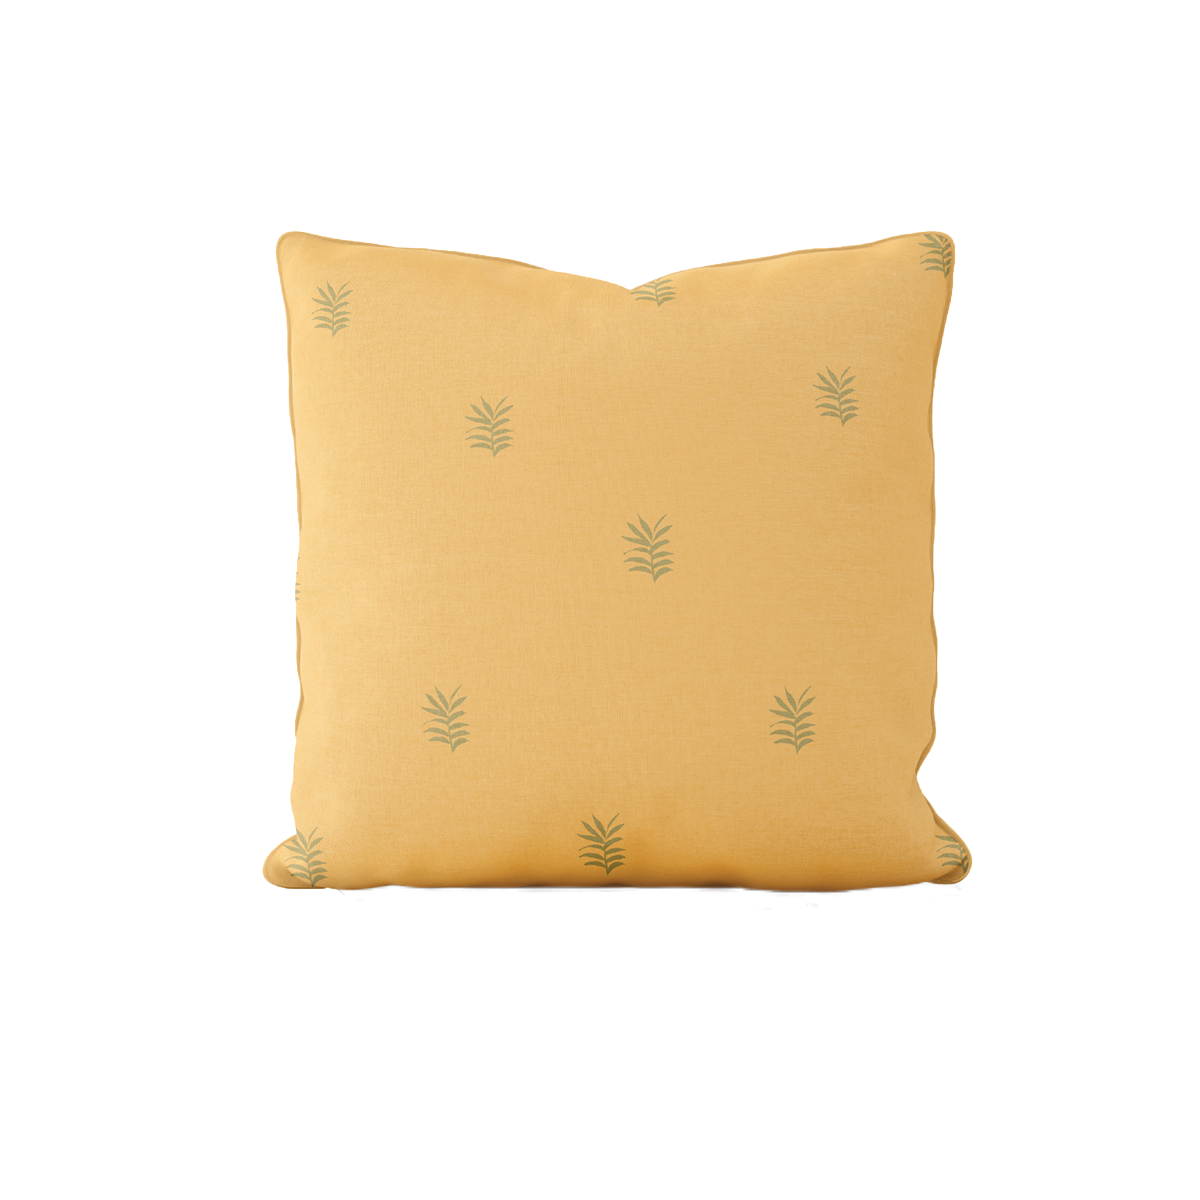 WHOLESALE: Golden Palm Citrus Pillow Covers Bulk